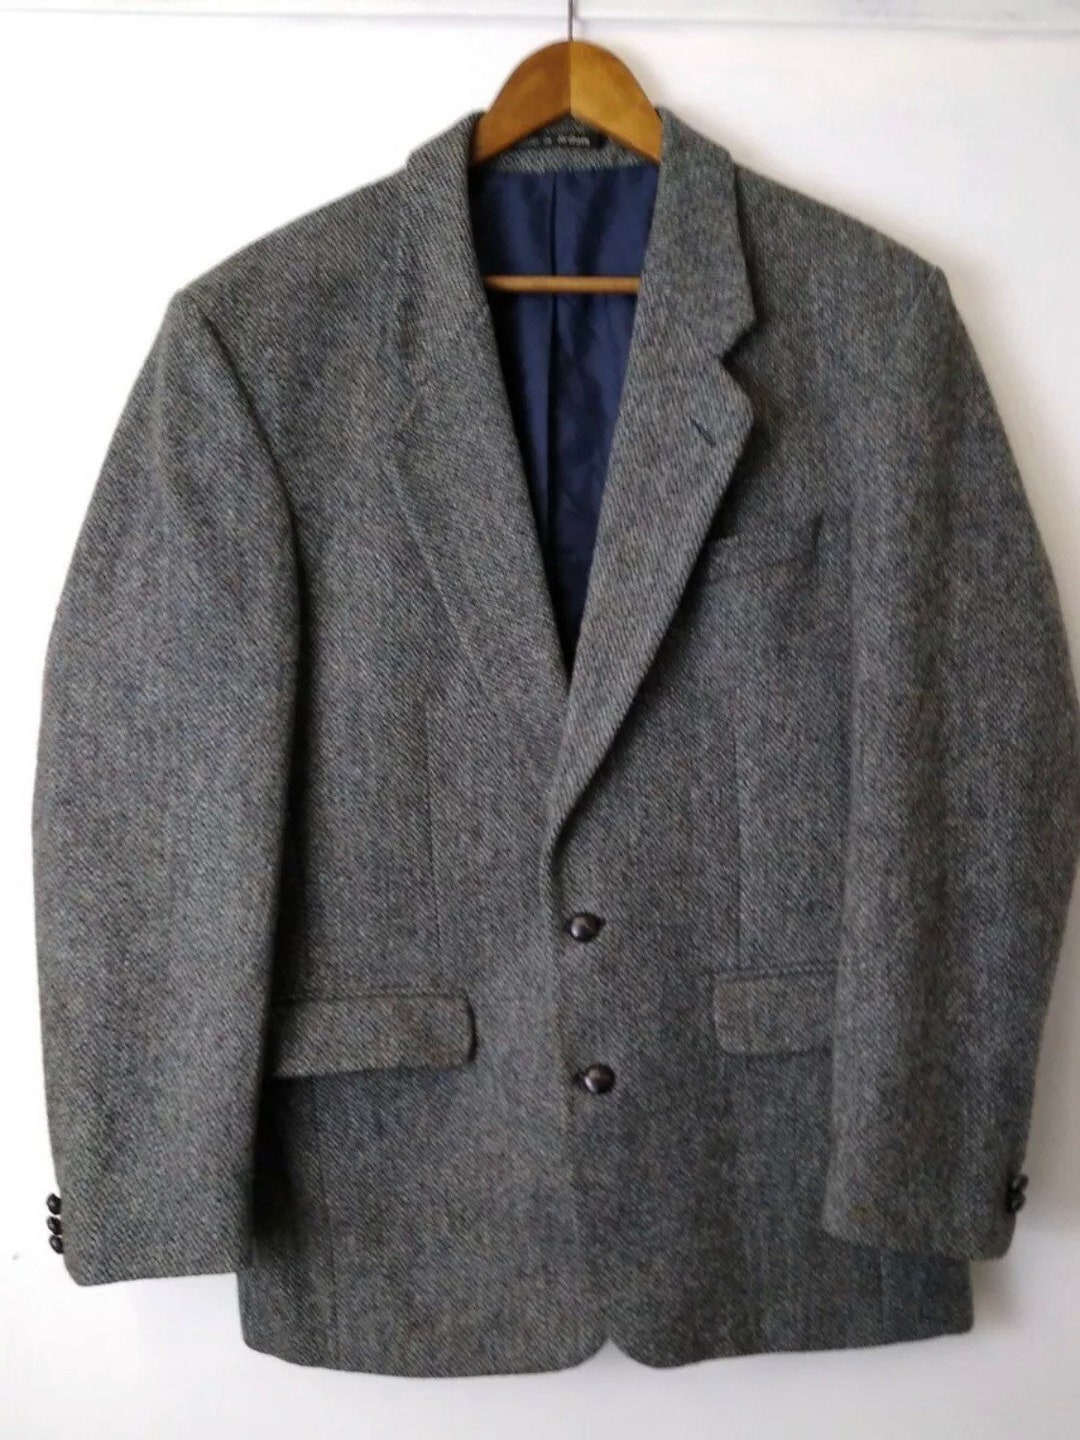 Vintage 1970s Harris Tweed Wool Suit Blazer Jacket by Kilmaine - Etsy